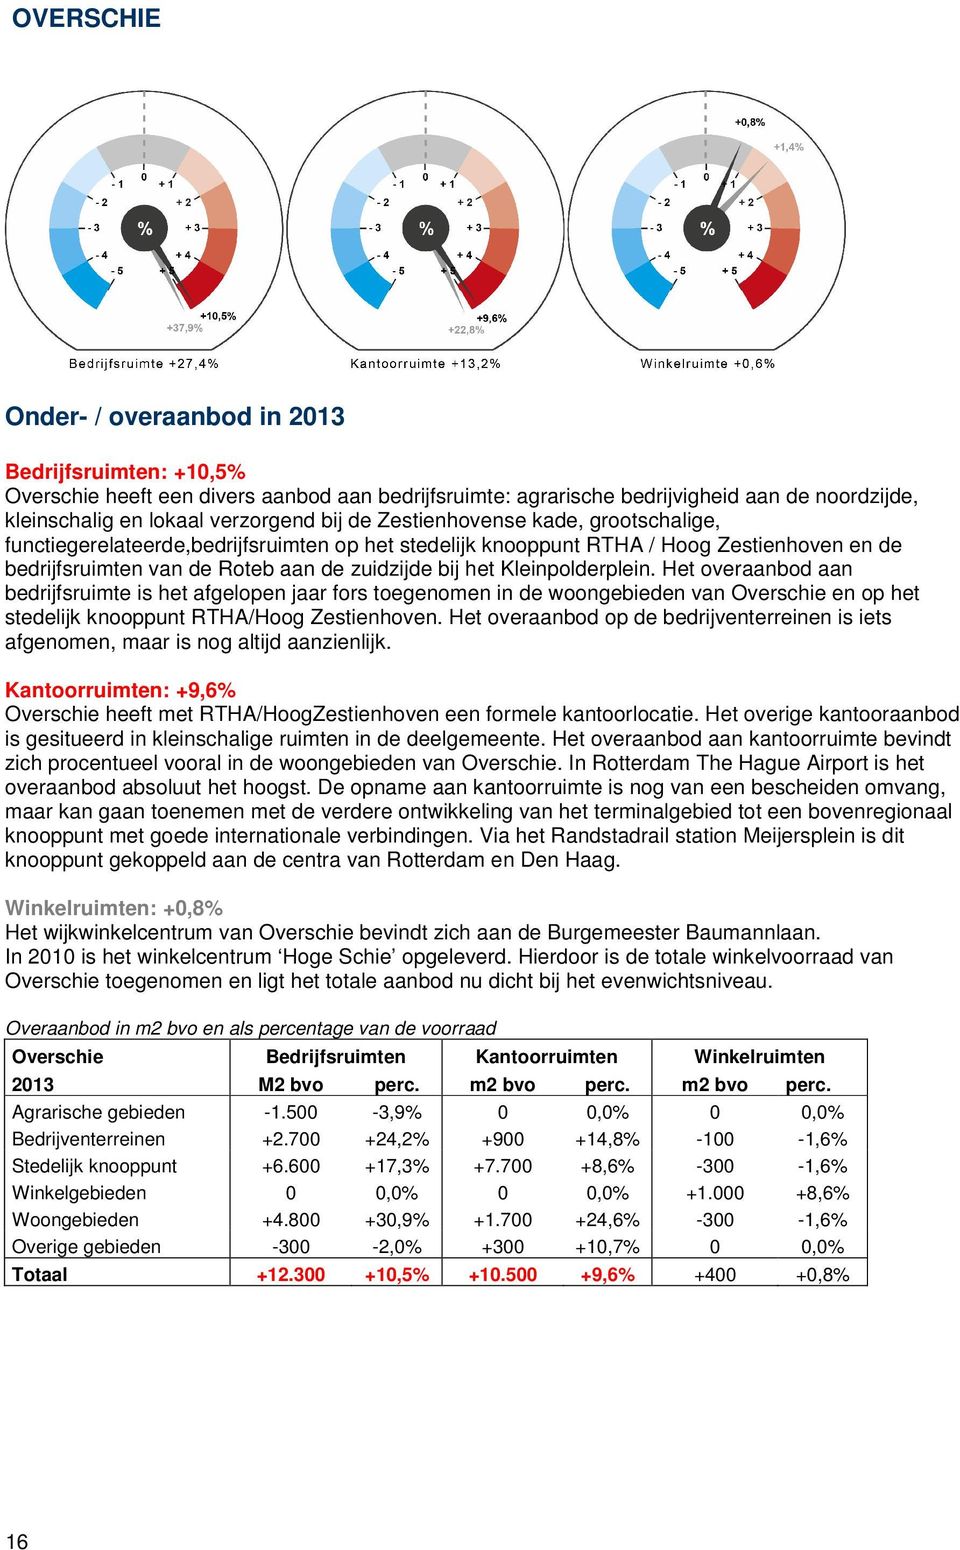 Kleinpolderplein. Het overaanbod aan bedrijfsruimte is het afgelopen jaar fors toegenomen in de woongebieden van Overschie en op het stedelijk knooppunt RTHA/Hoog Zestienhoven.